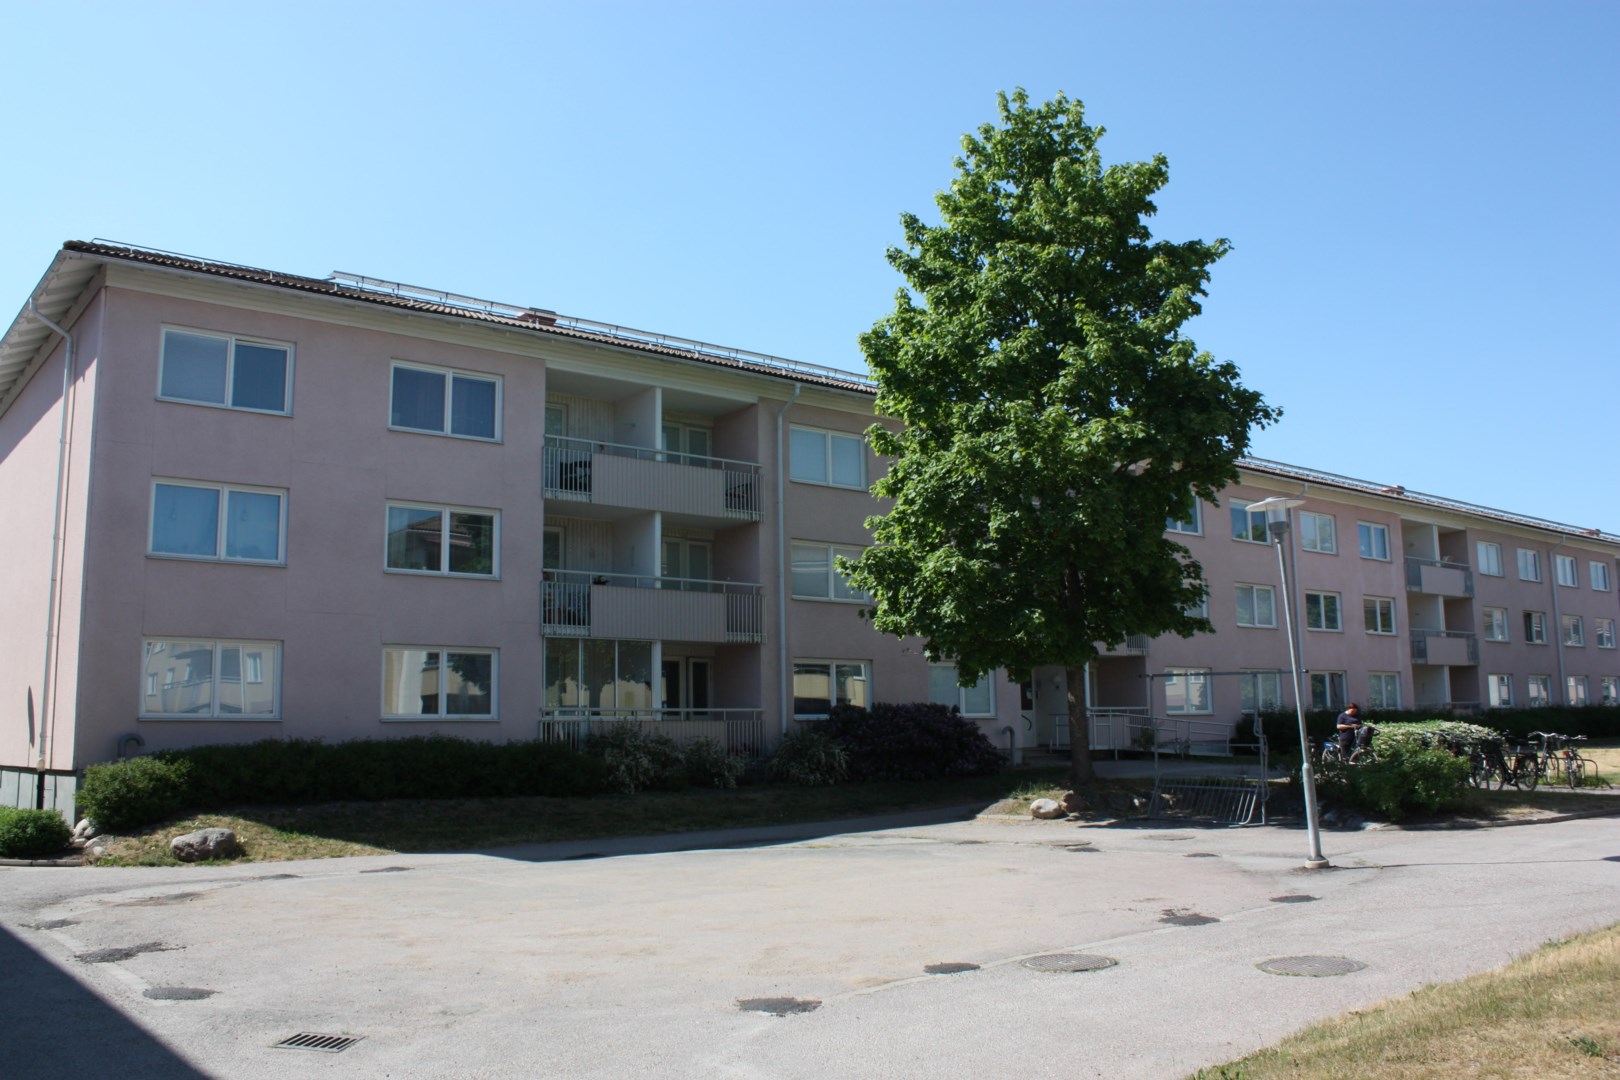 Bostadsrätt i Bjurhovda, Västerås, Sverige, Knotavägen 18